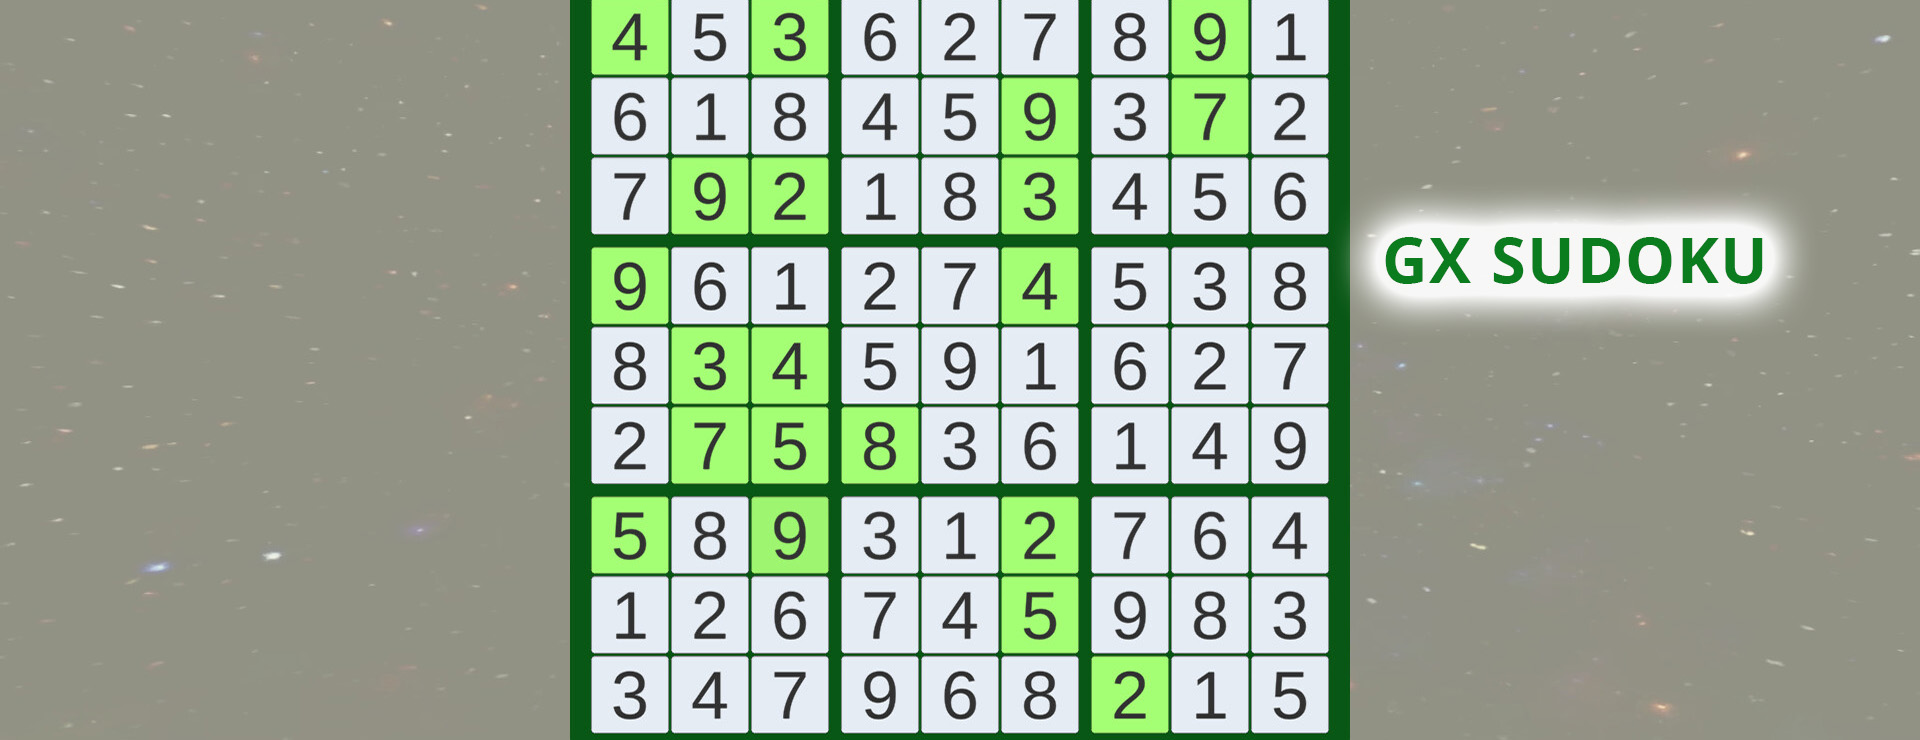 GX Sudoku - Zwanglos  Spiel